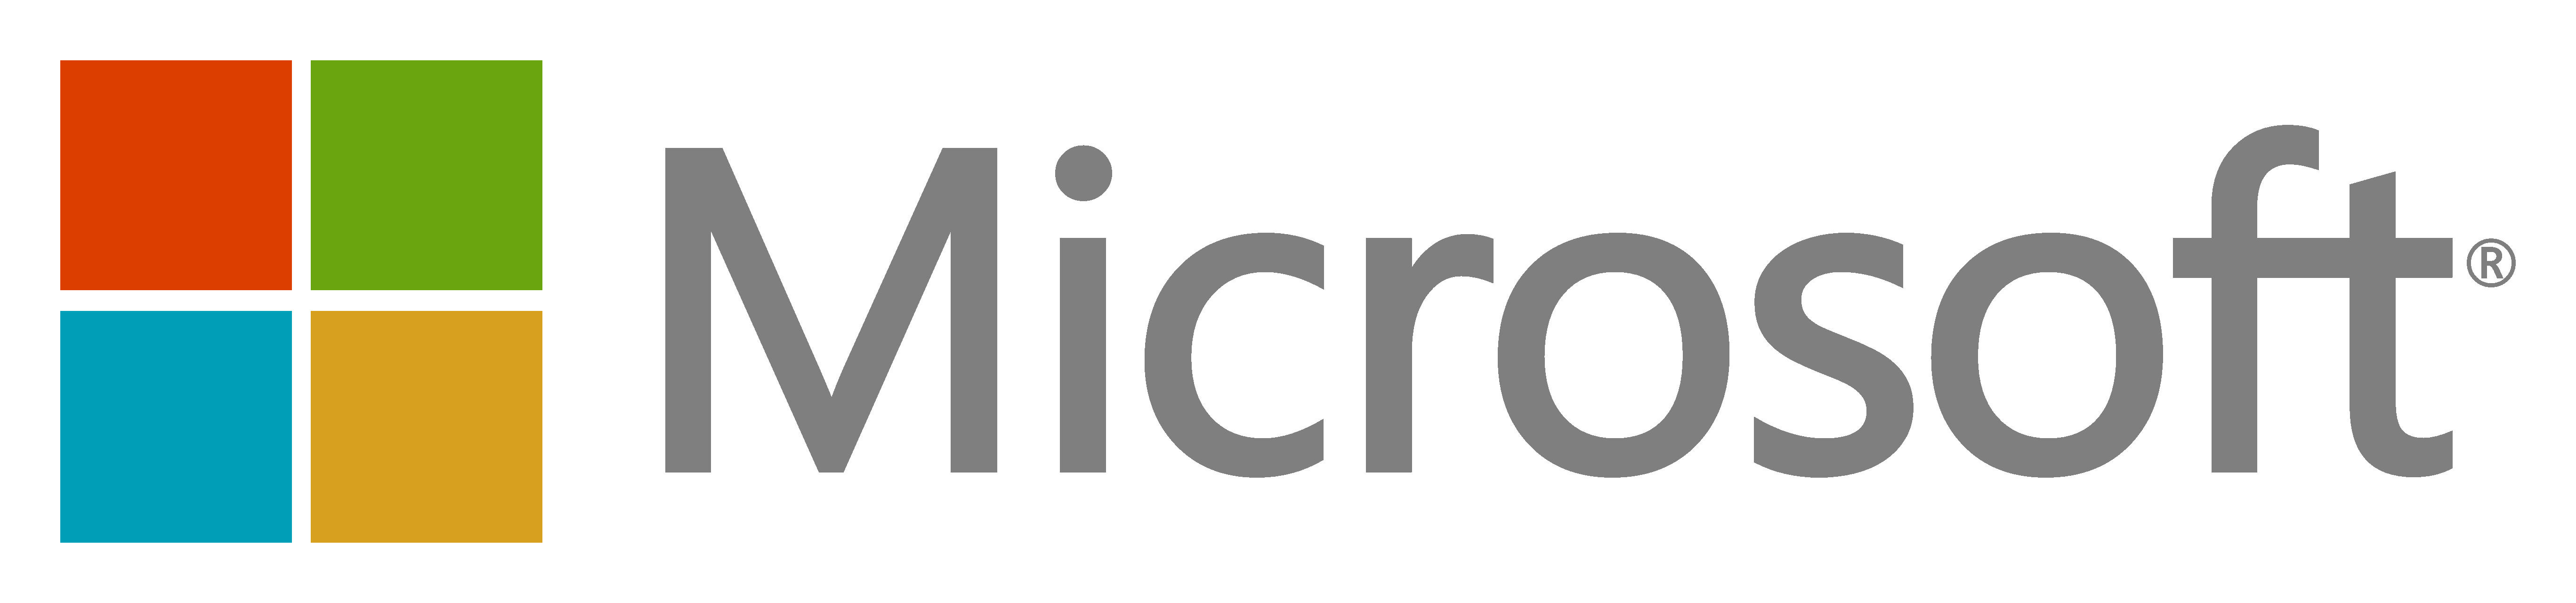 Microsoft logo alt.png